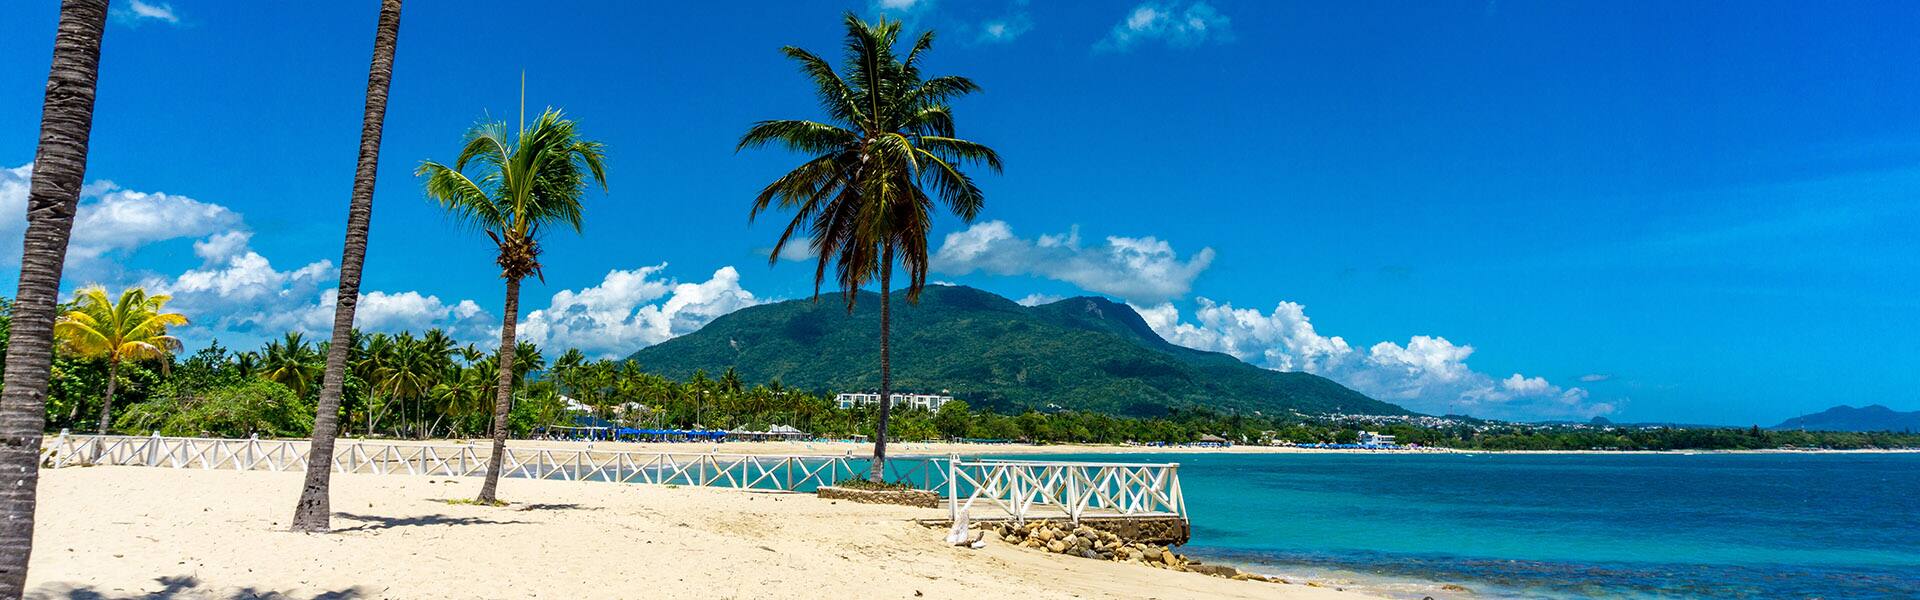 Caribe: Great Stirrup Cay y República Dominicana